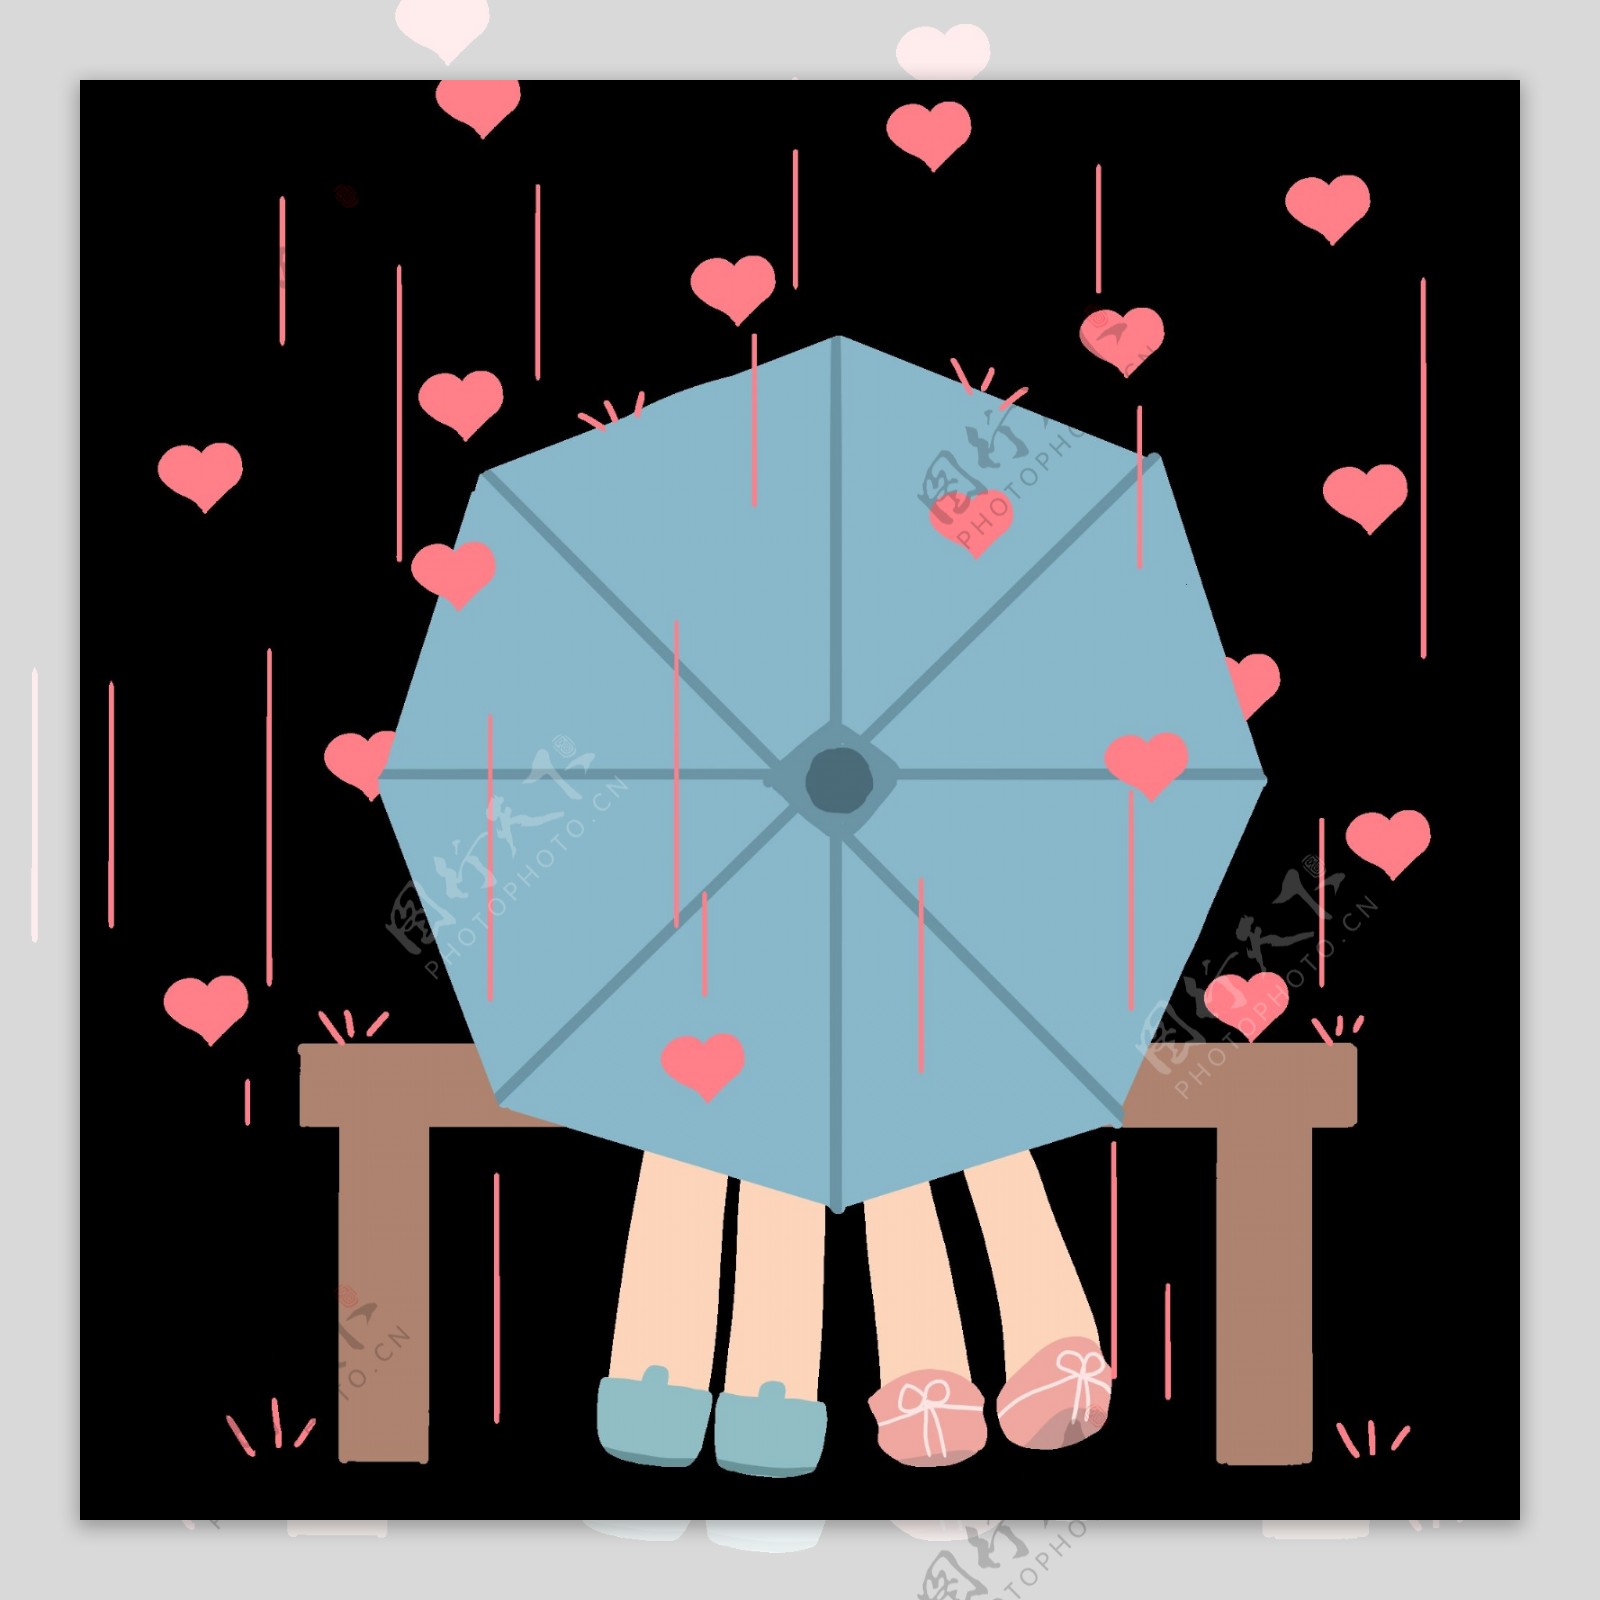 عکس PNG چتر - چتر سرمه ای - PNG Umbrella Image – دانلود رایگان